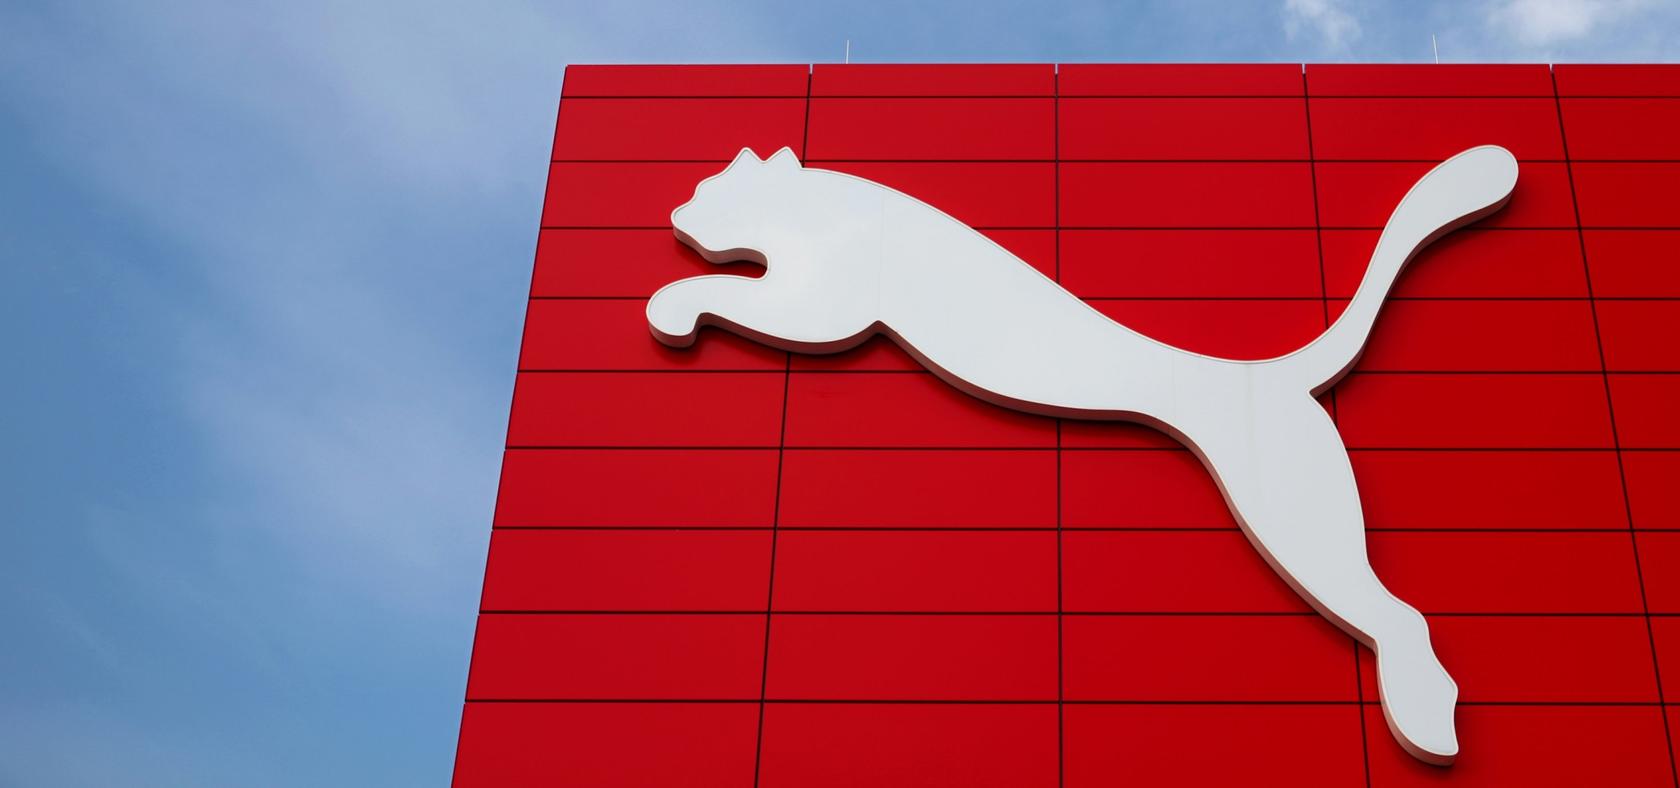 Sportartikelhersteller Puma befindet sich auf Zwei-Monats-Tief.